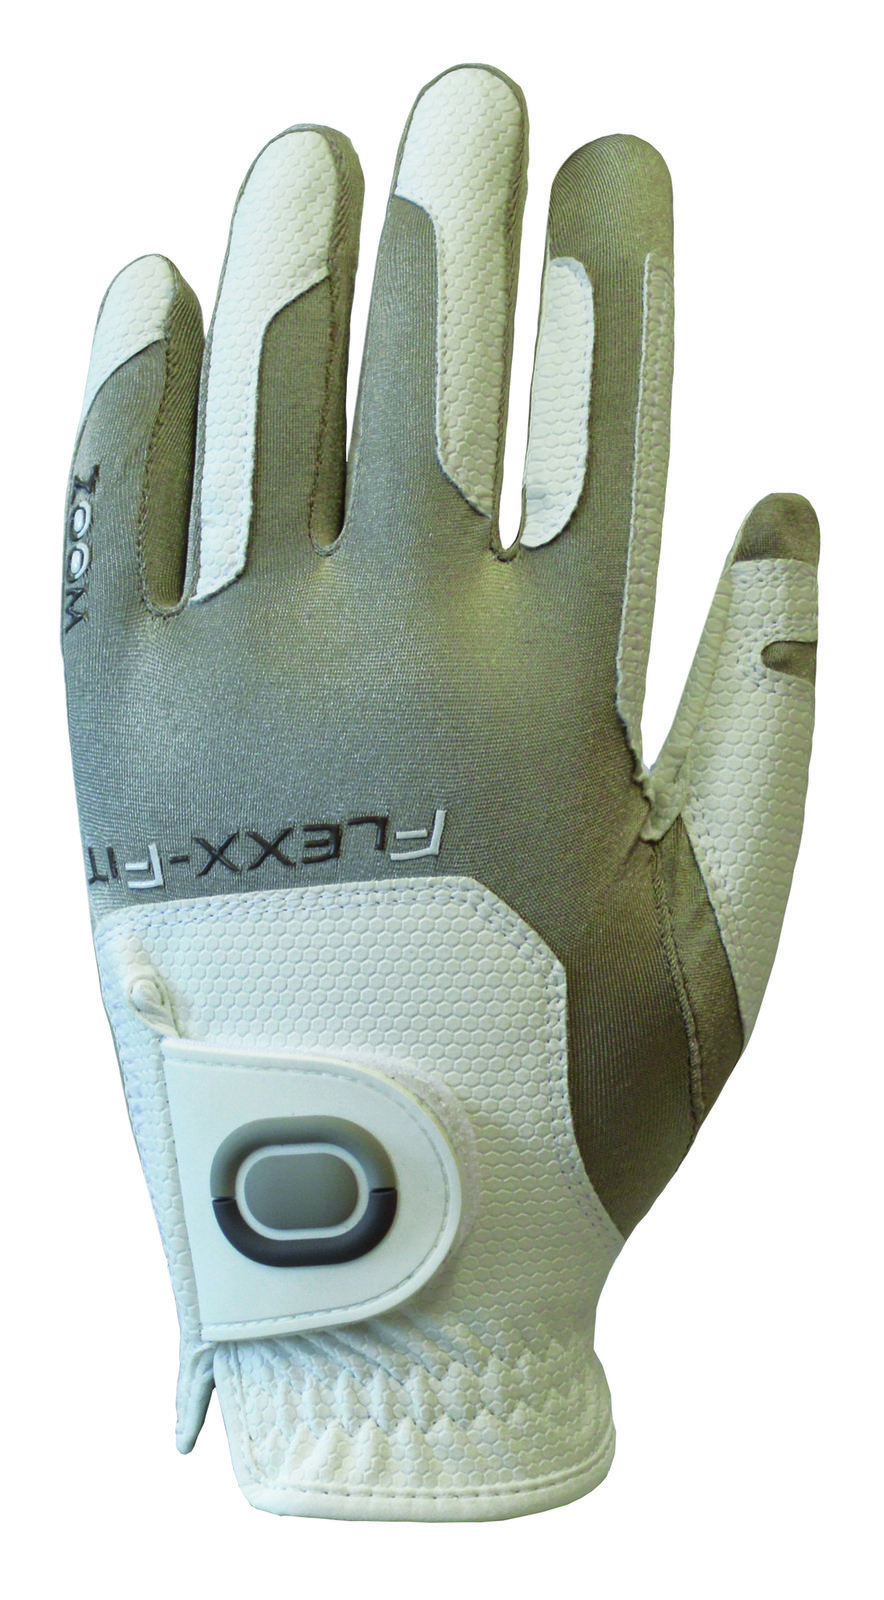 Gloves Zoom Gloves Weather Womens Golf Glove White/Sand LH